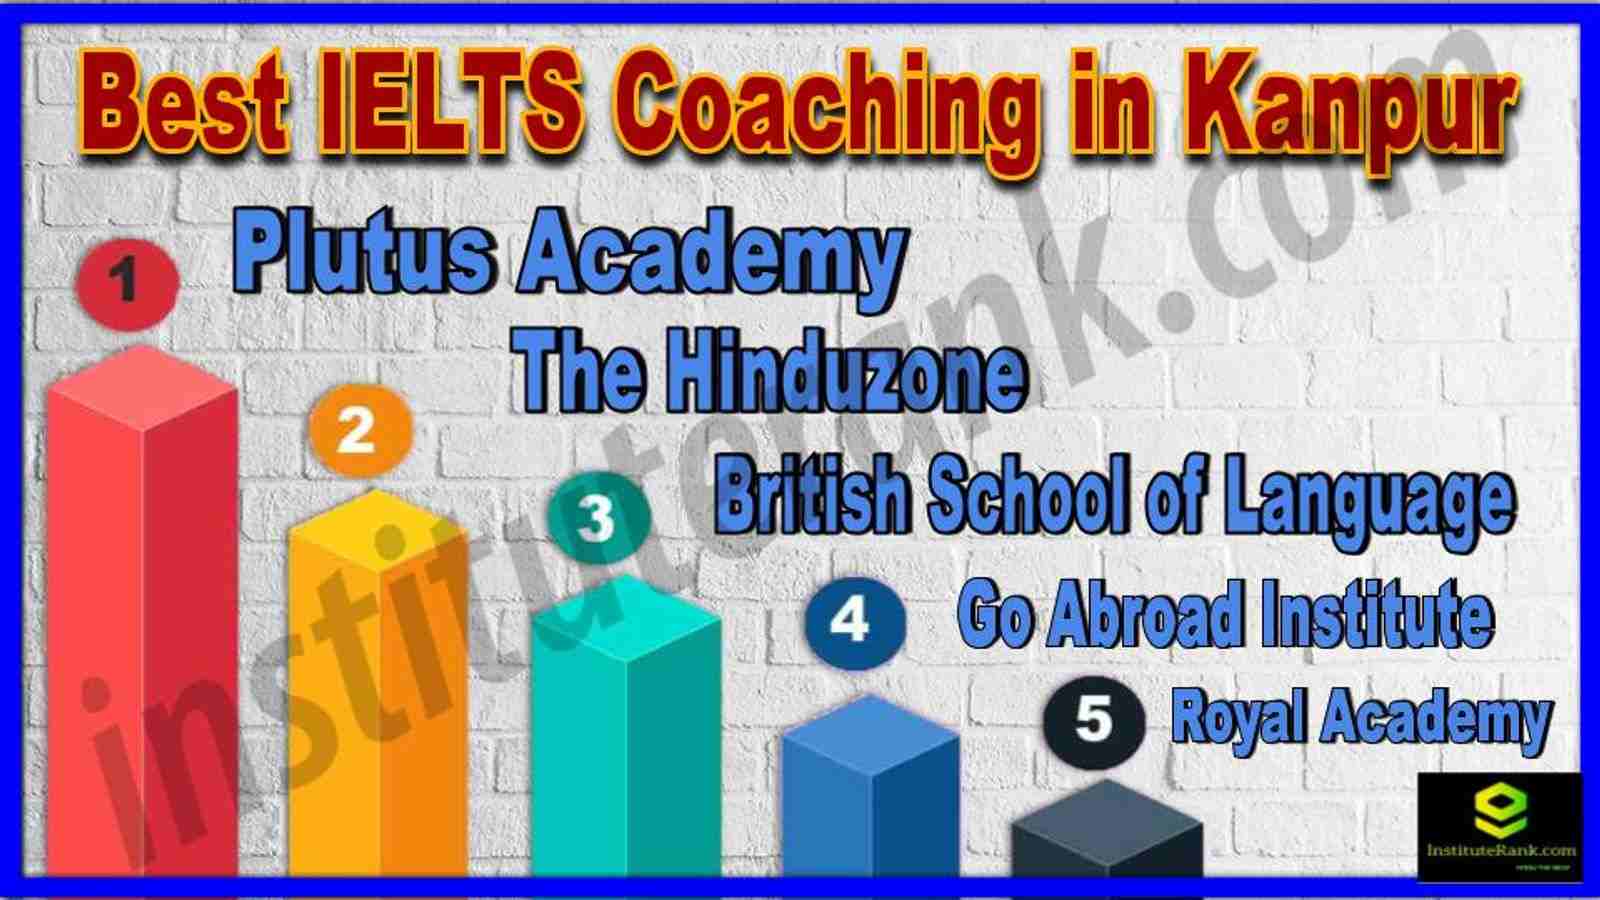 Best IELTS Coaching in Kanpur